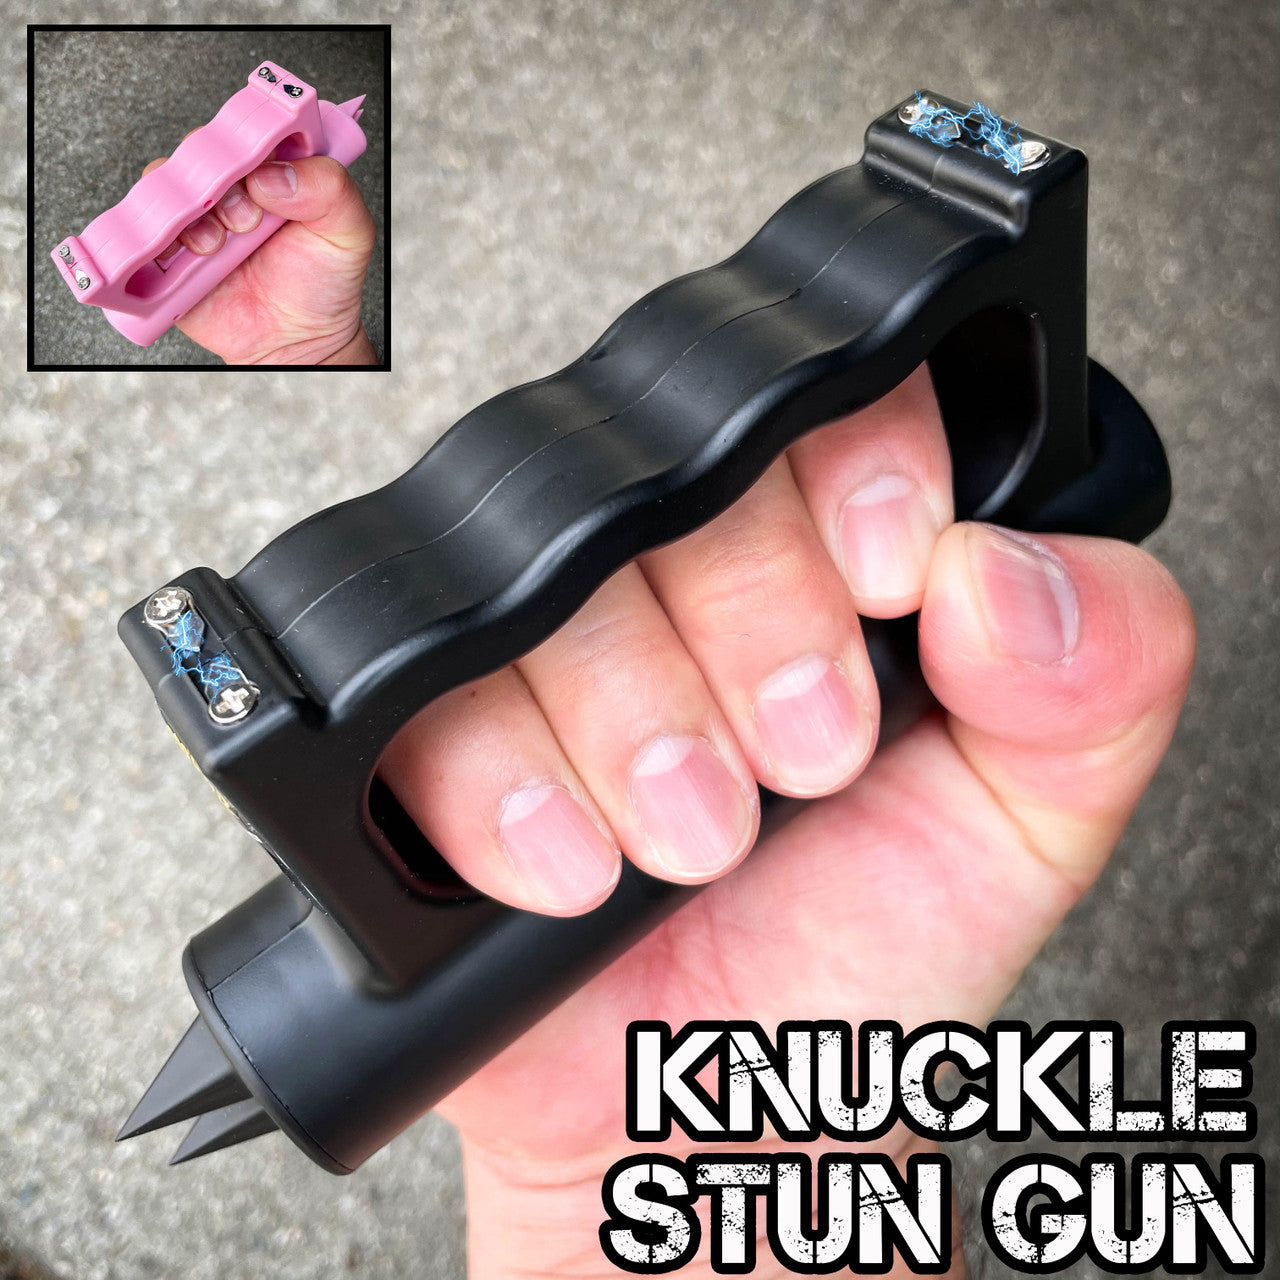 Double Down 23,000,000 Knuckle Stun Gun w/ Light Lifetime Warranty